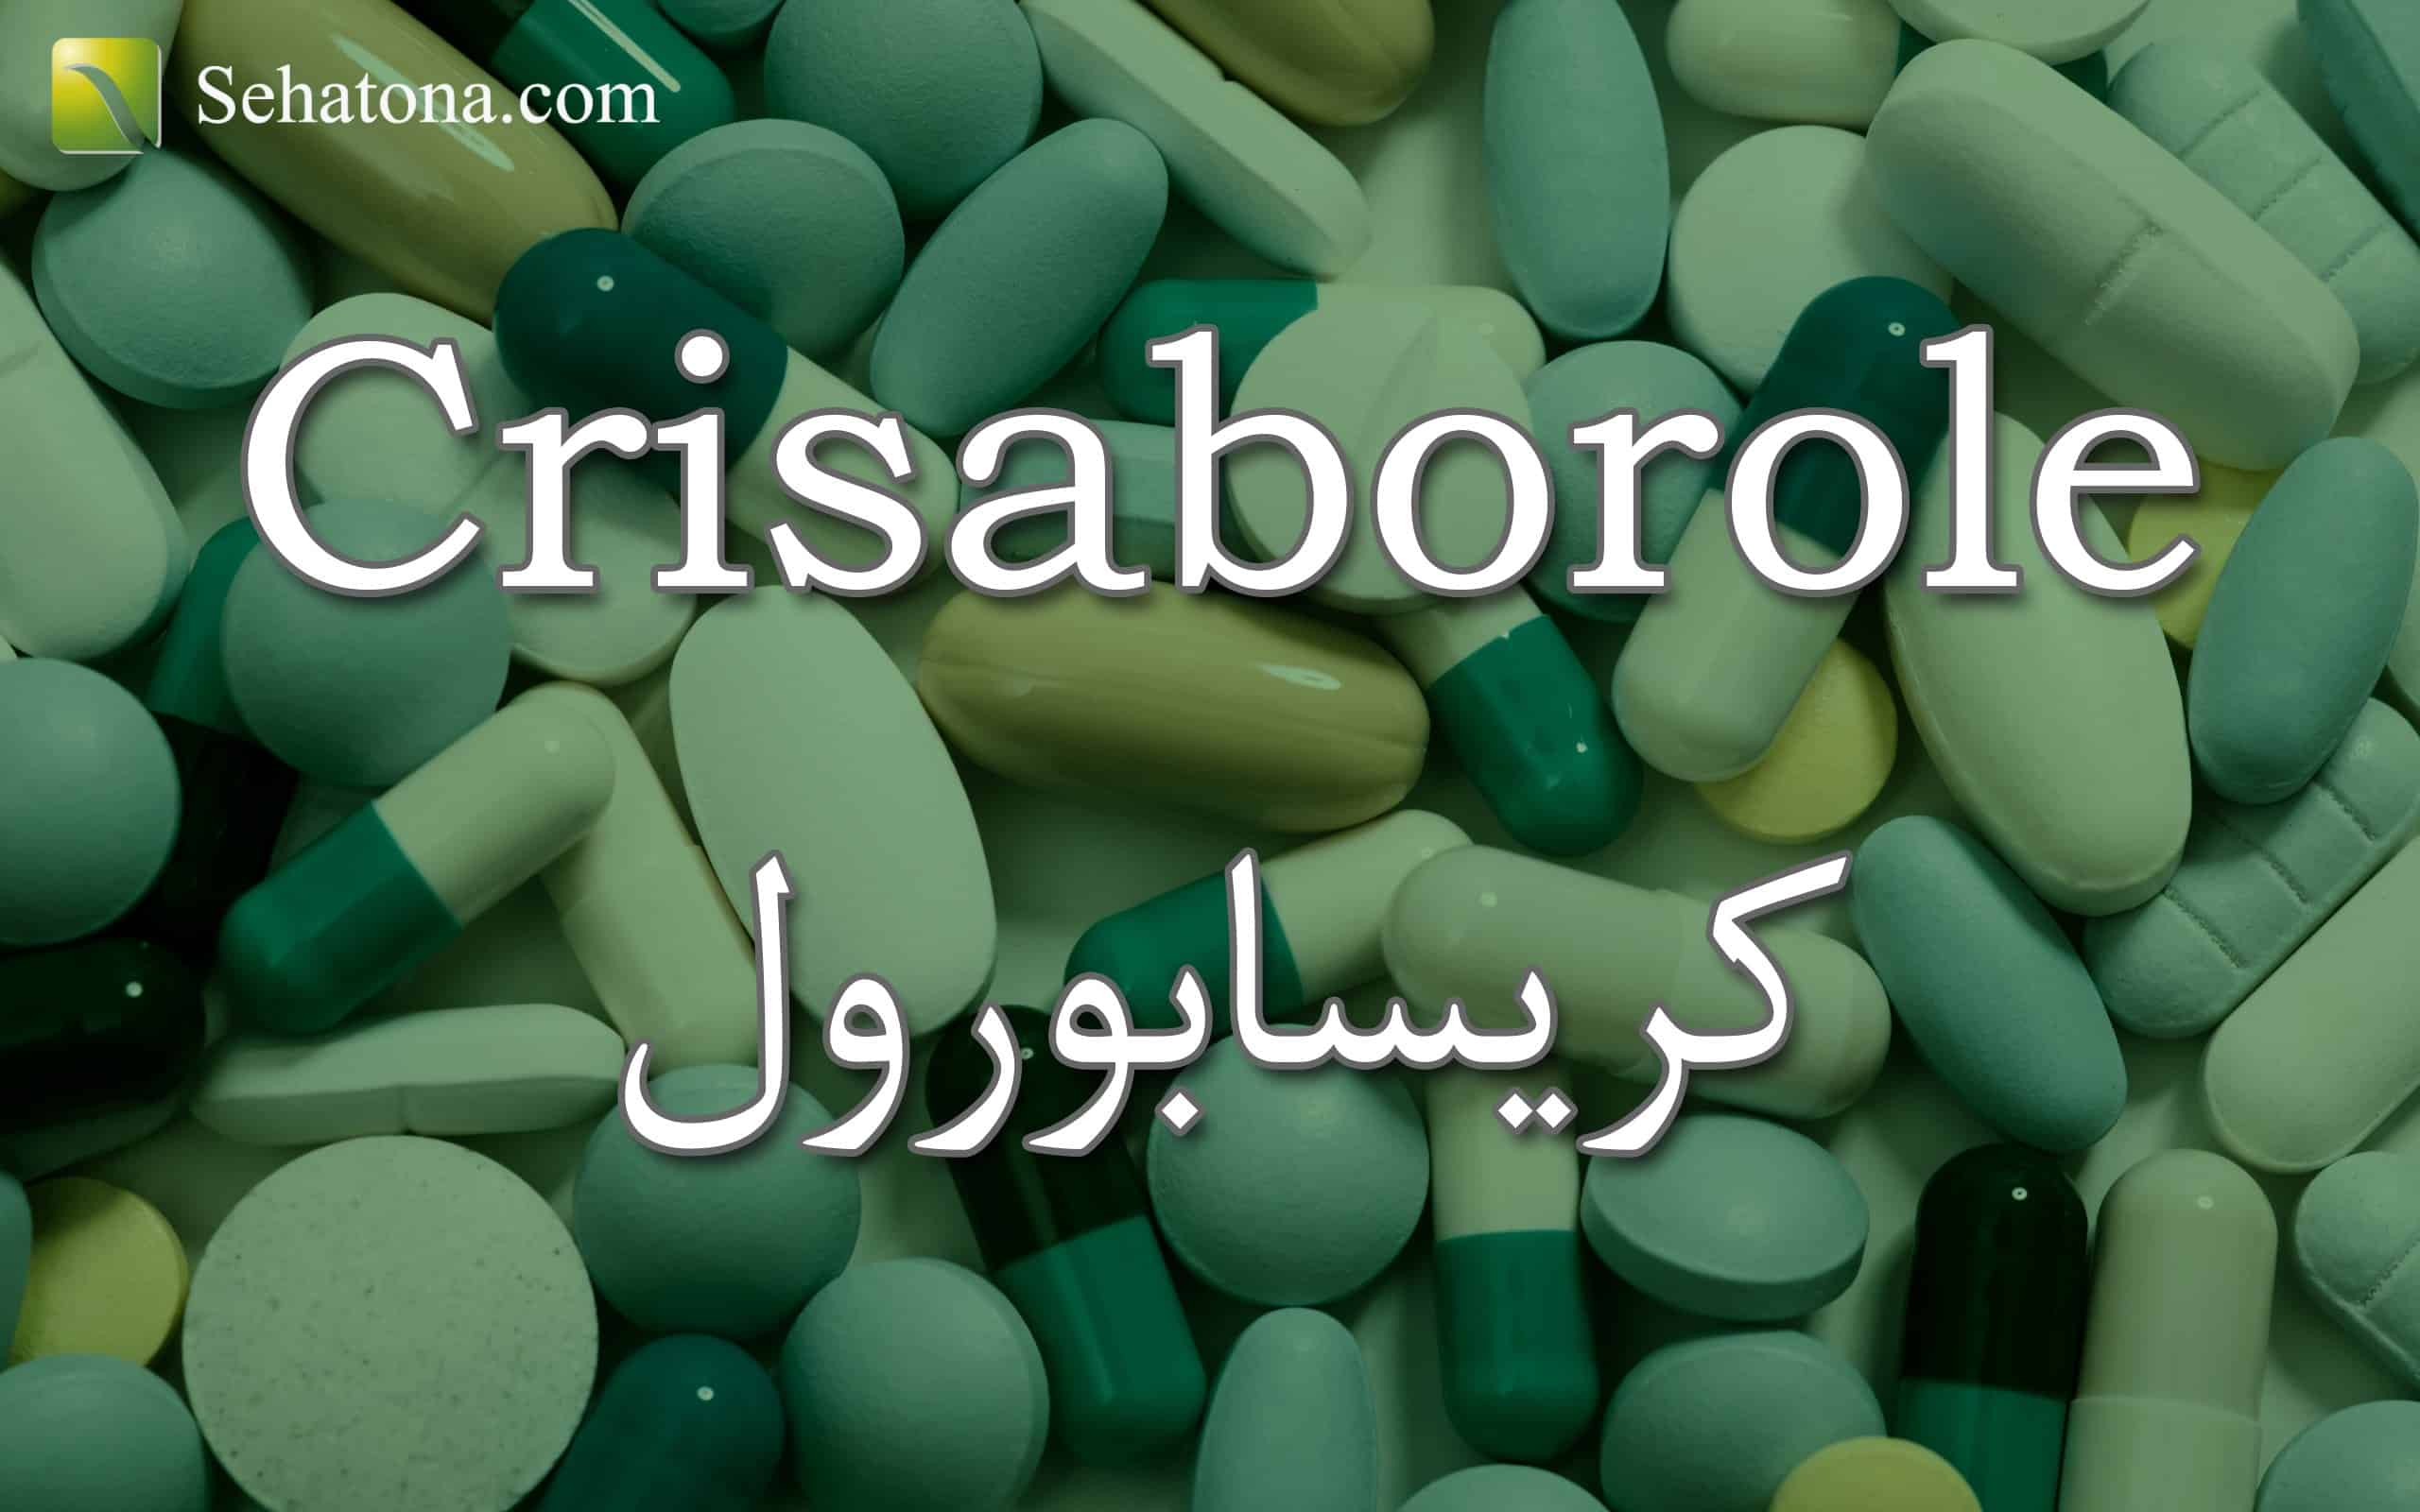 Crisaborole